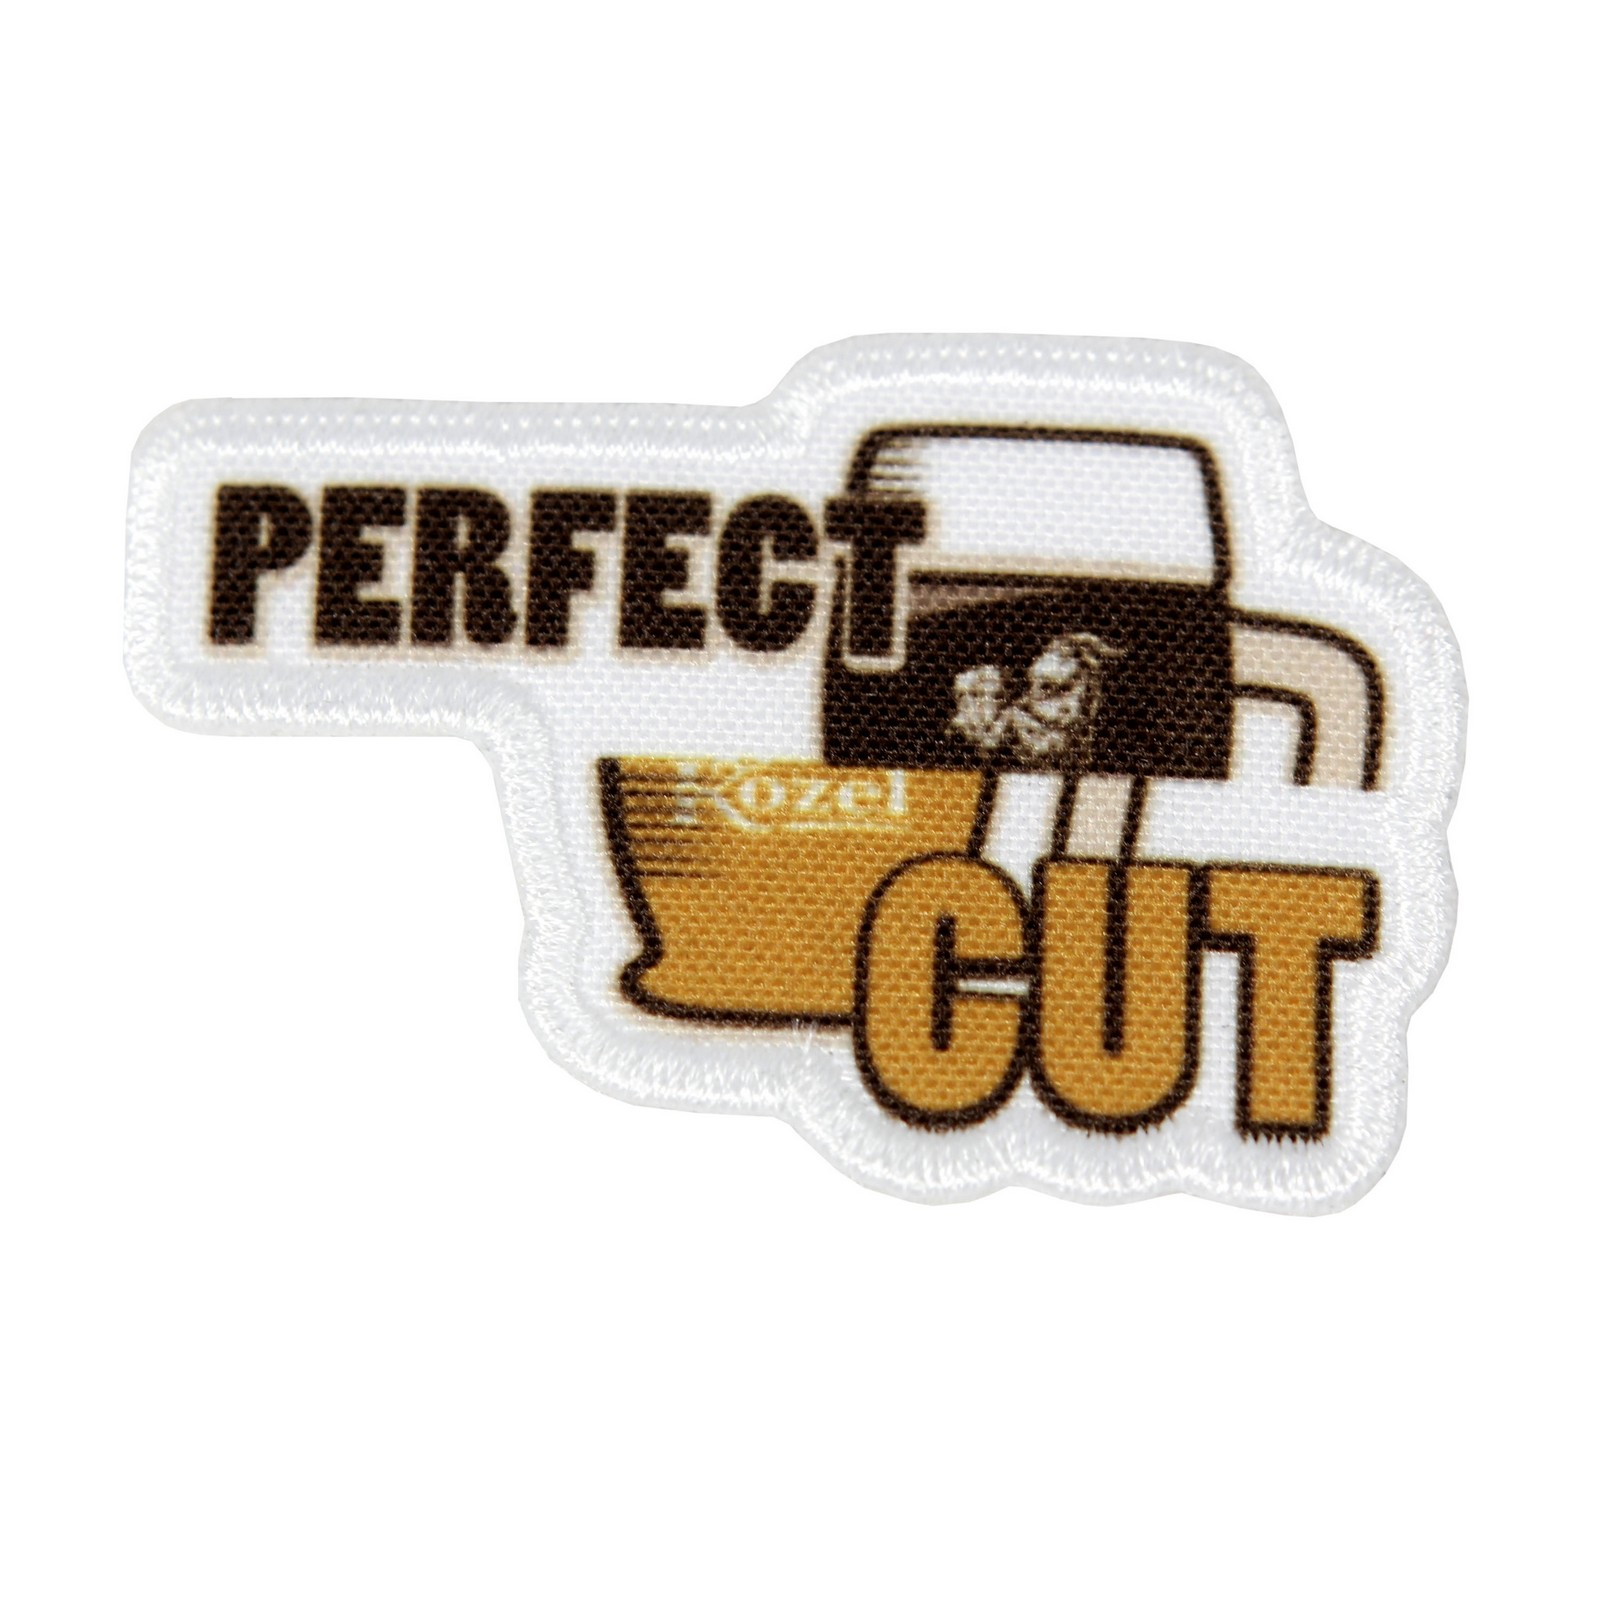 Iron-on patch Kozel perfect cut